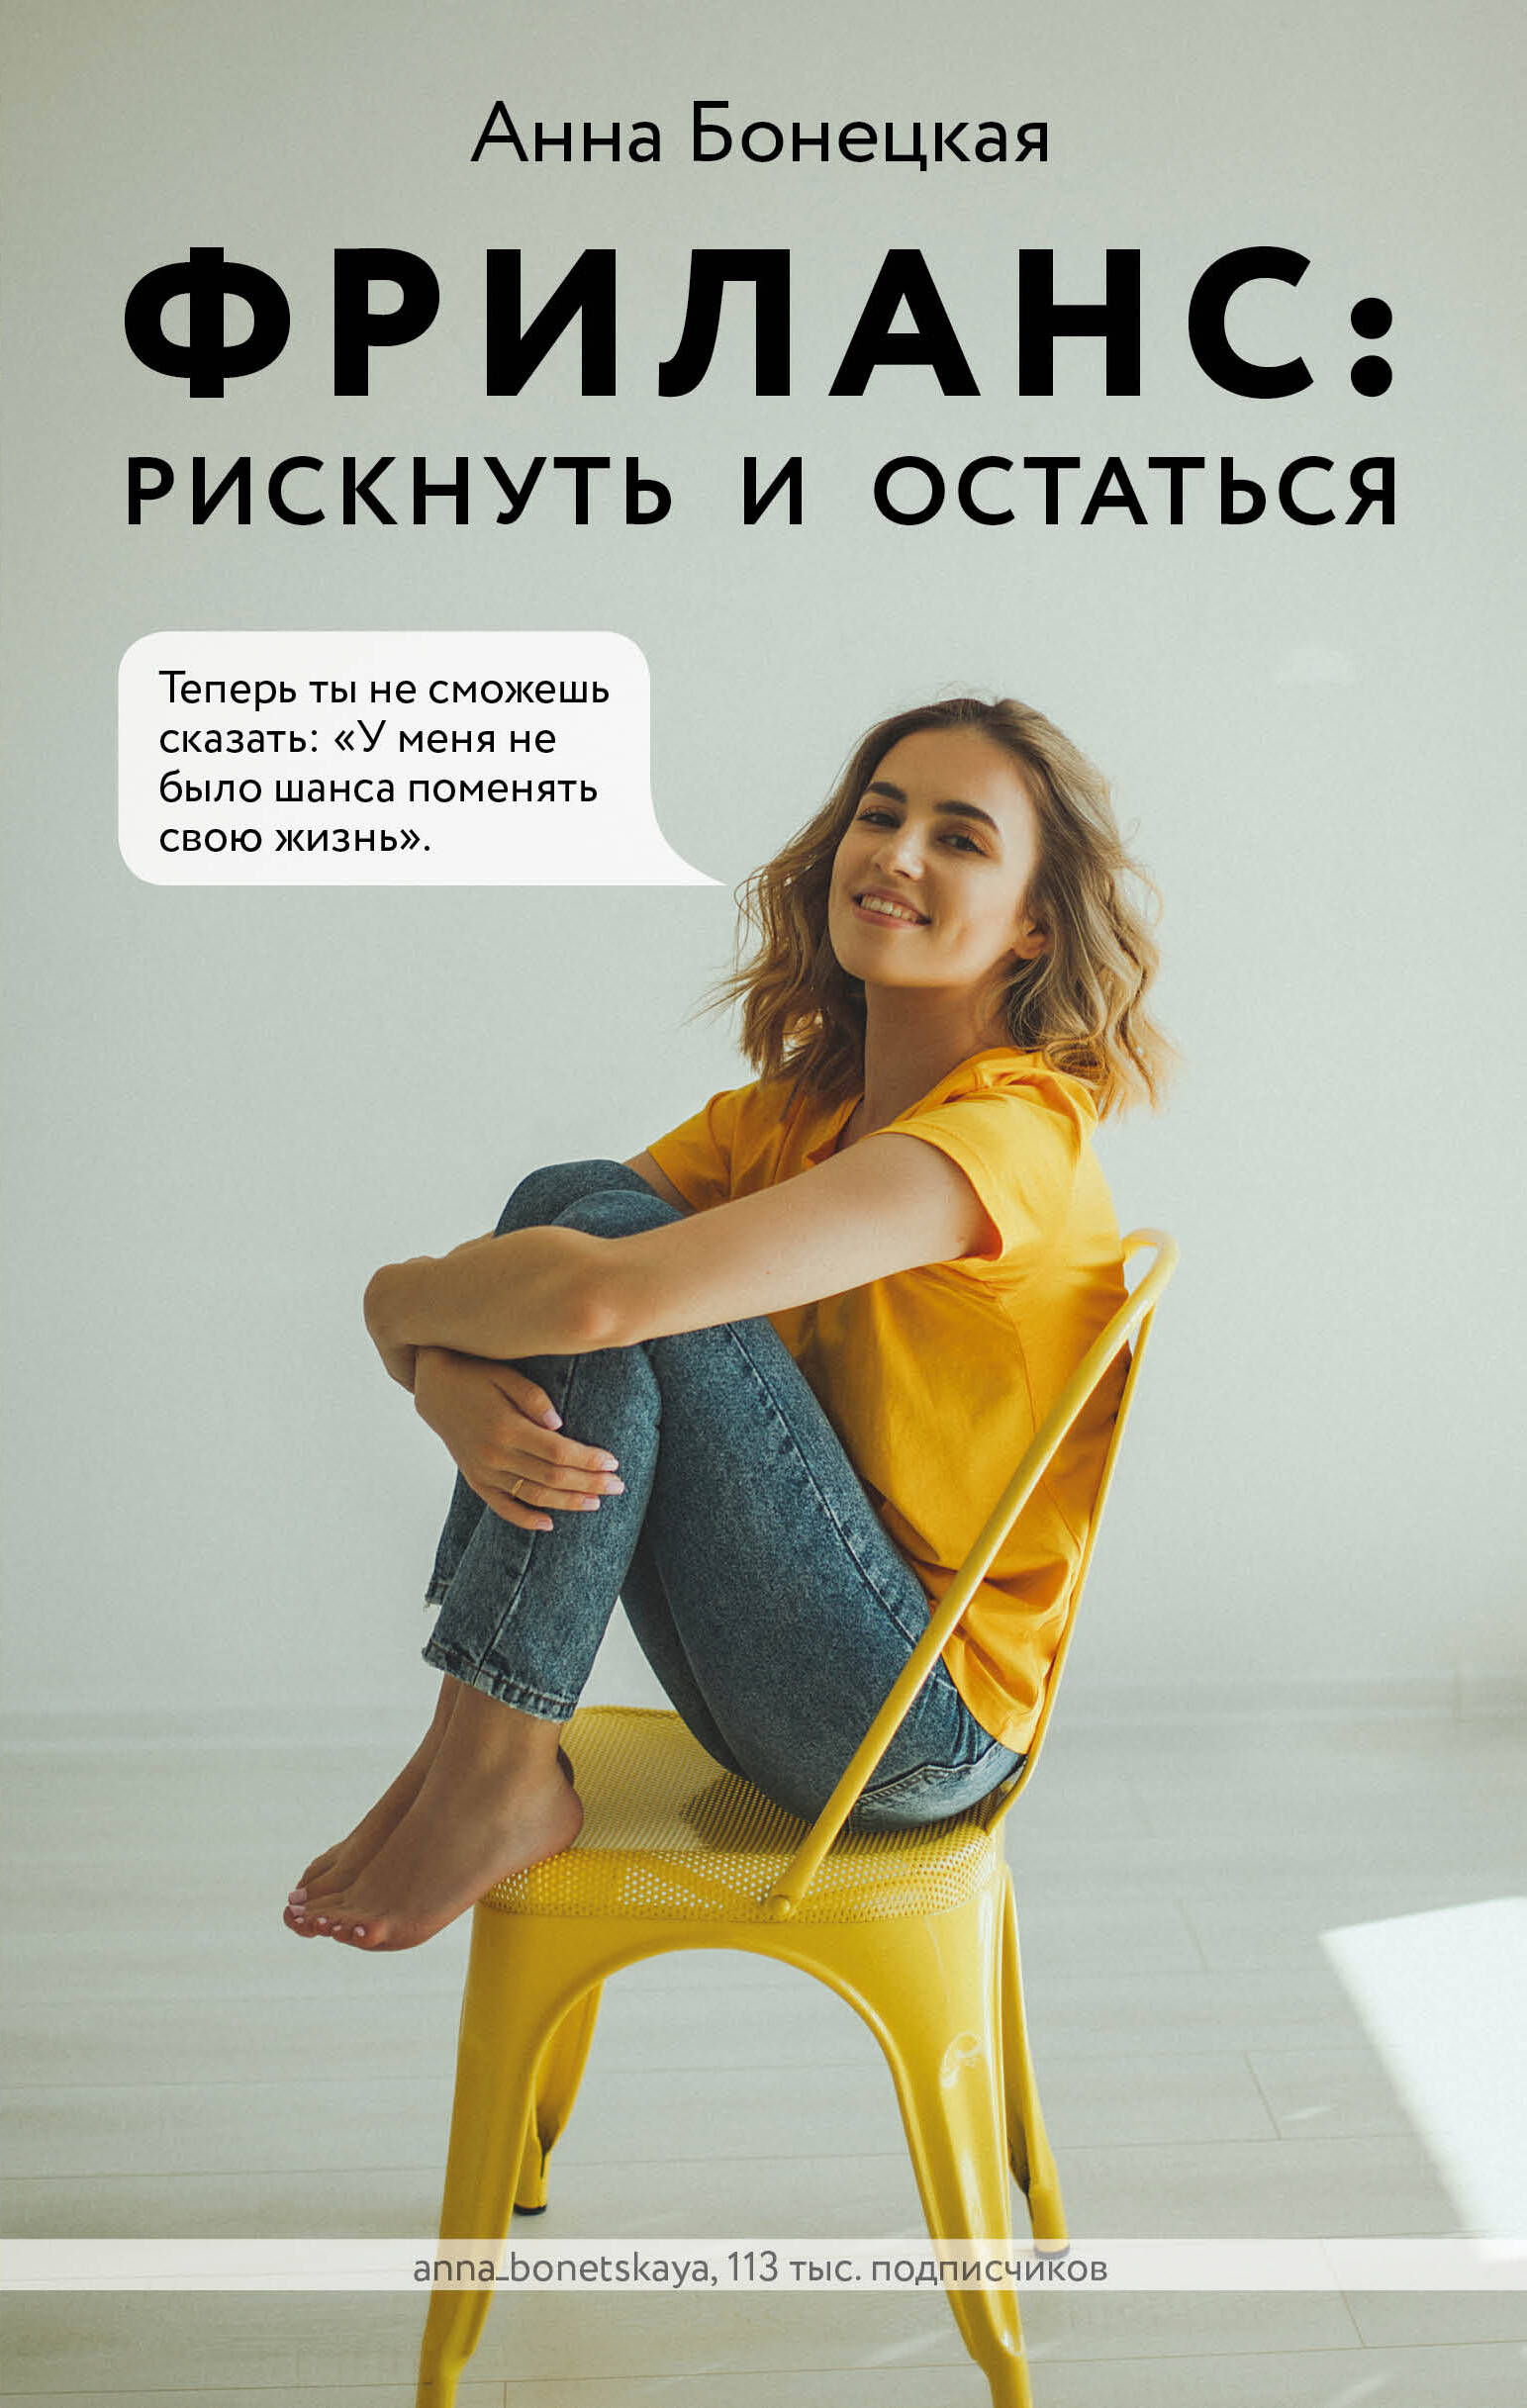 Бонецкая Анна Георгиевна - Фриланс: рискнуть и остаться